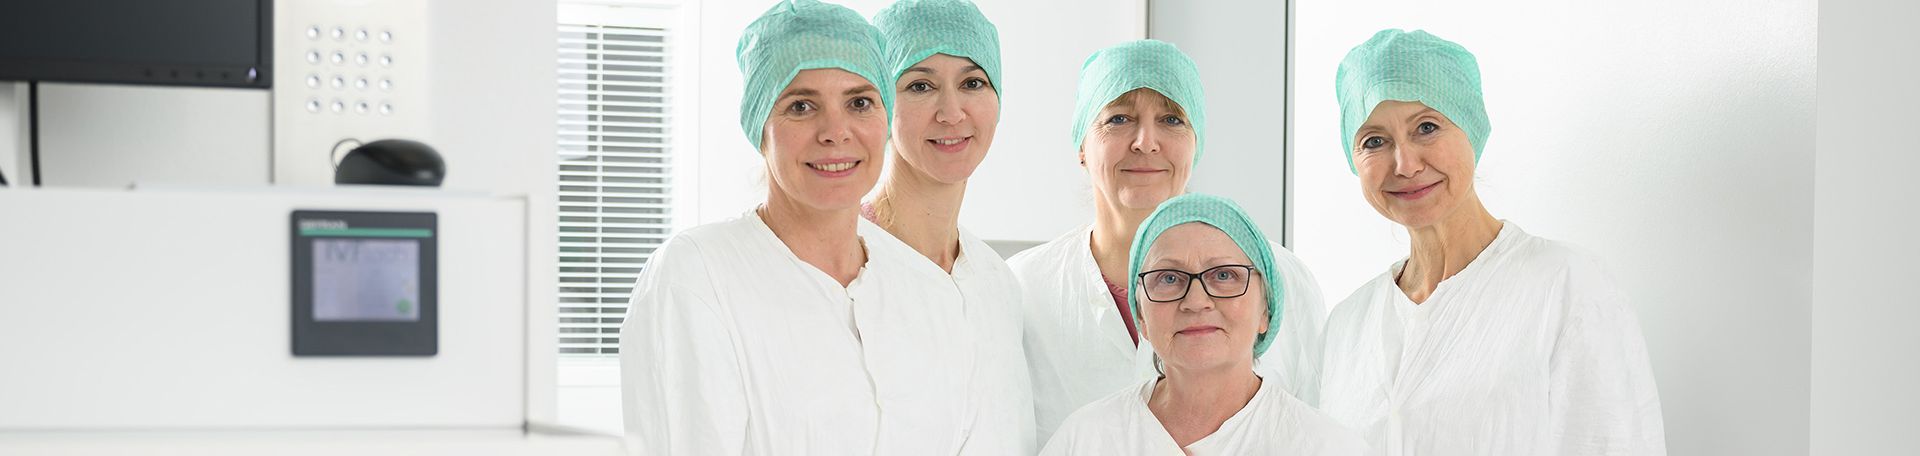 Gruppenfoto von Mitarbeiterinnen aus dem Labor